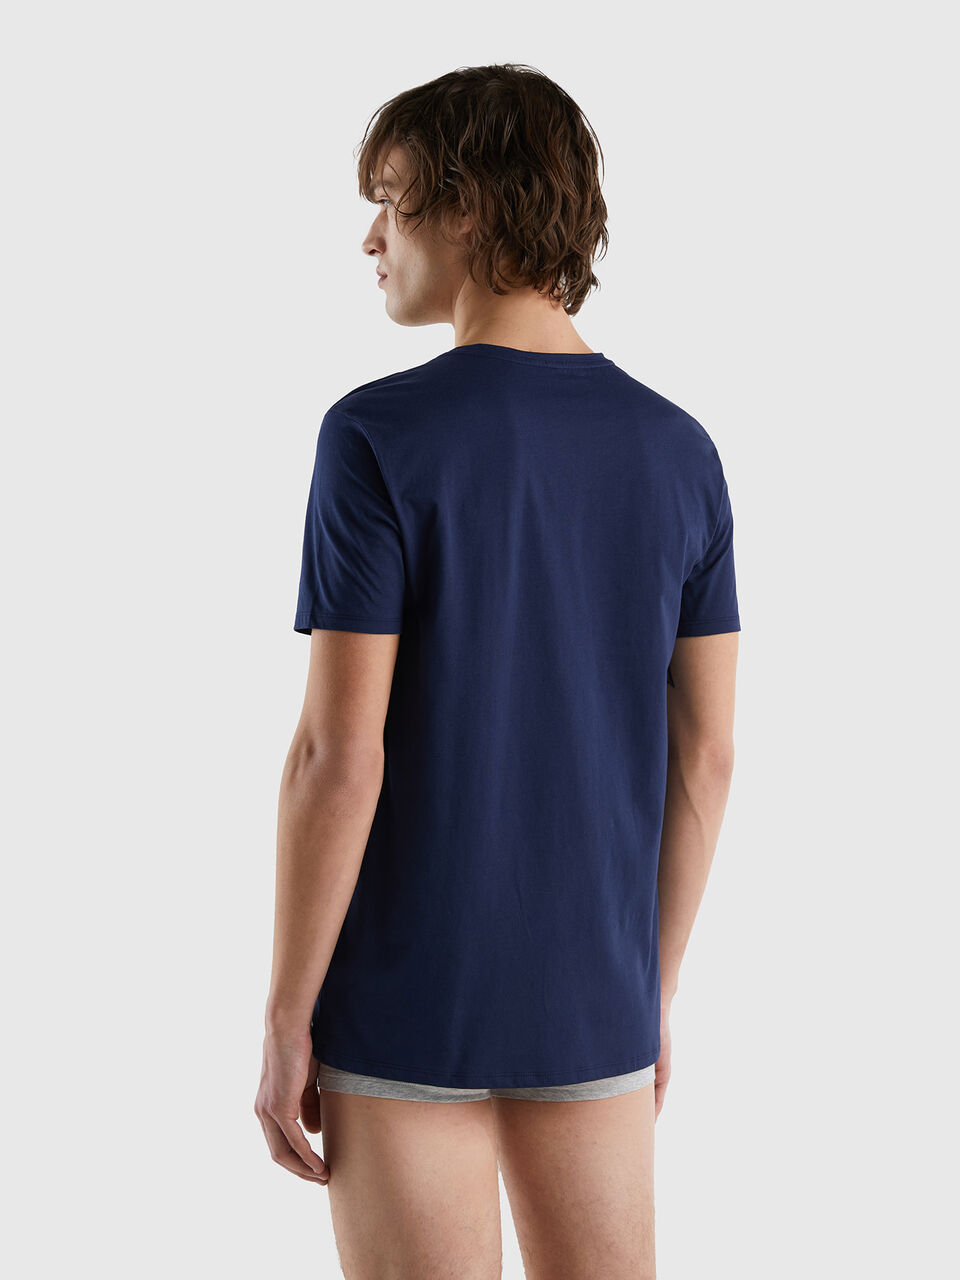 Long fiber cotton t-shirt - Benetton Dark Blue 